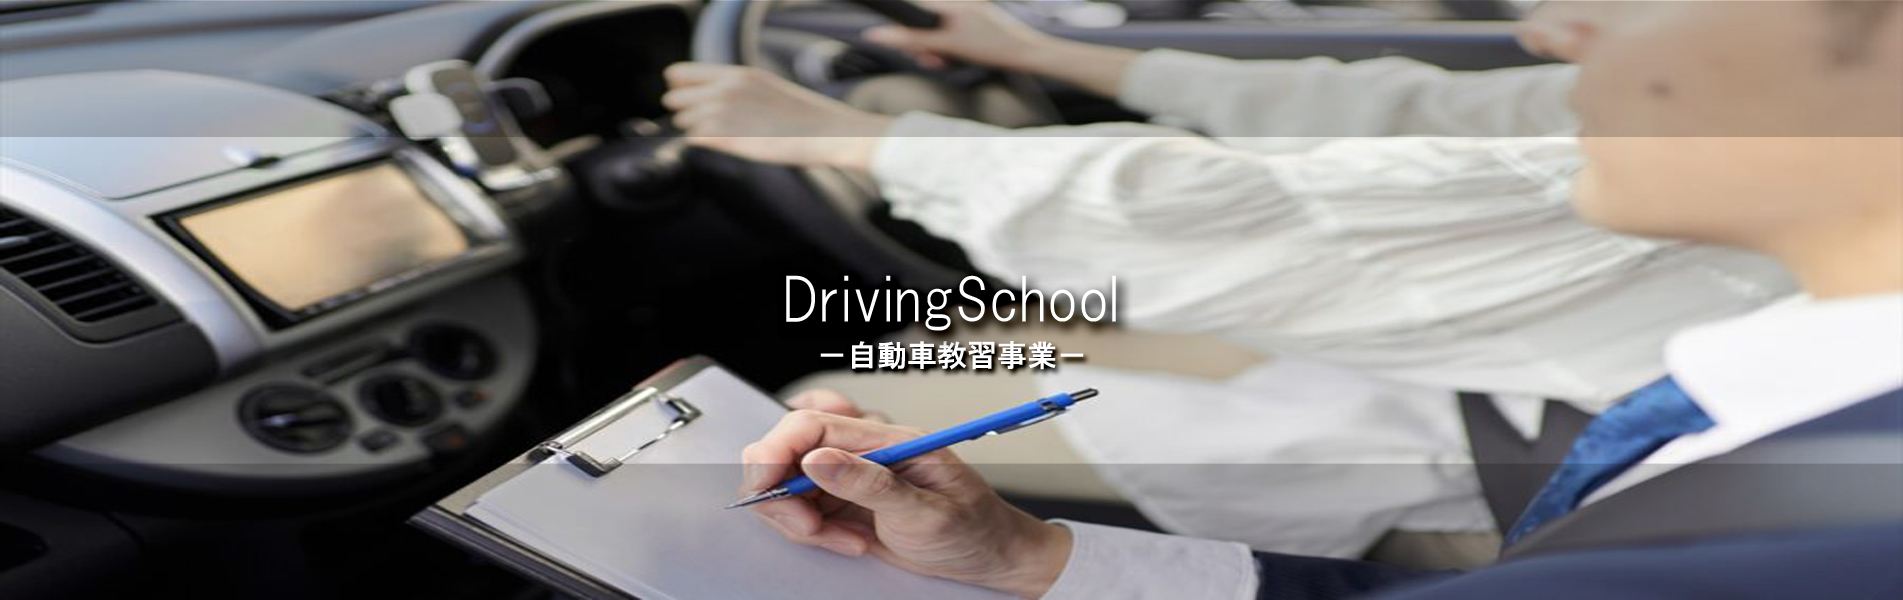 driving school -自動車教習事業-